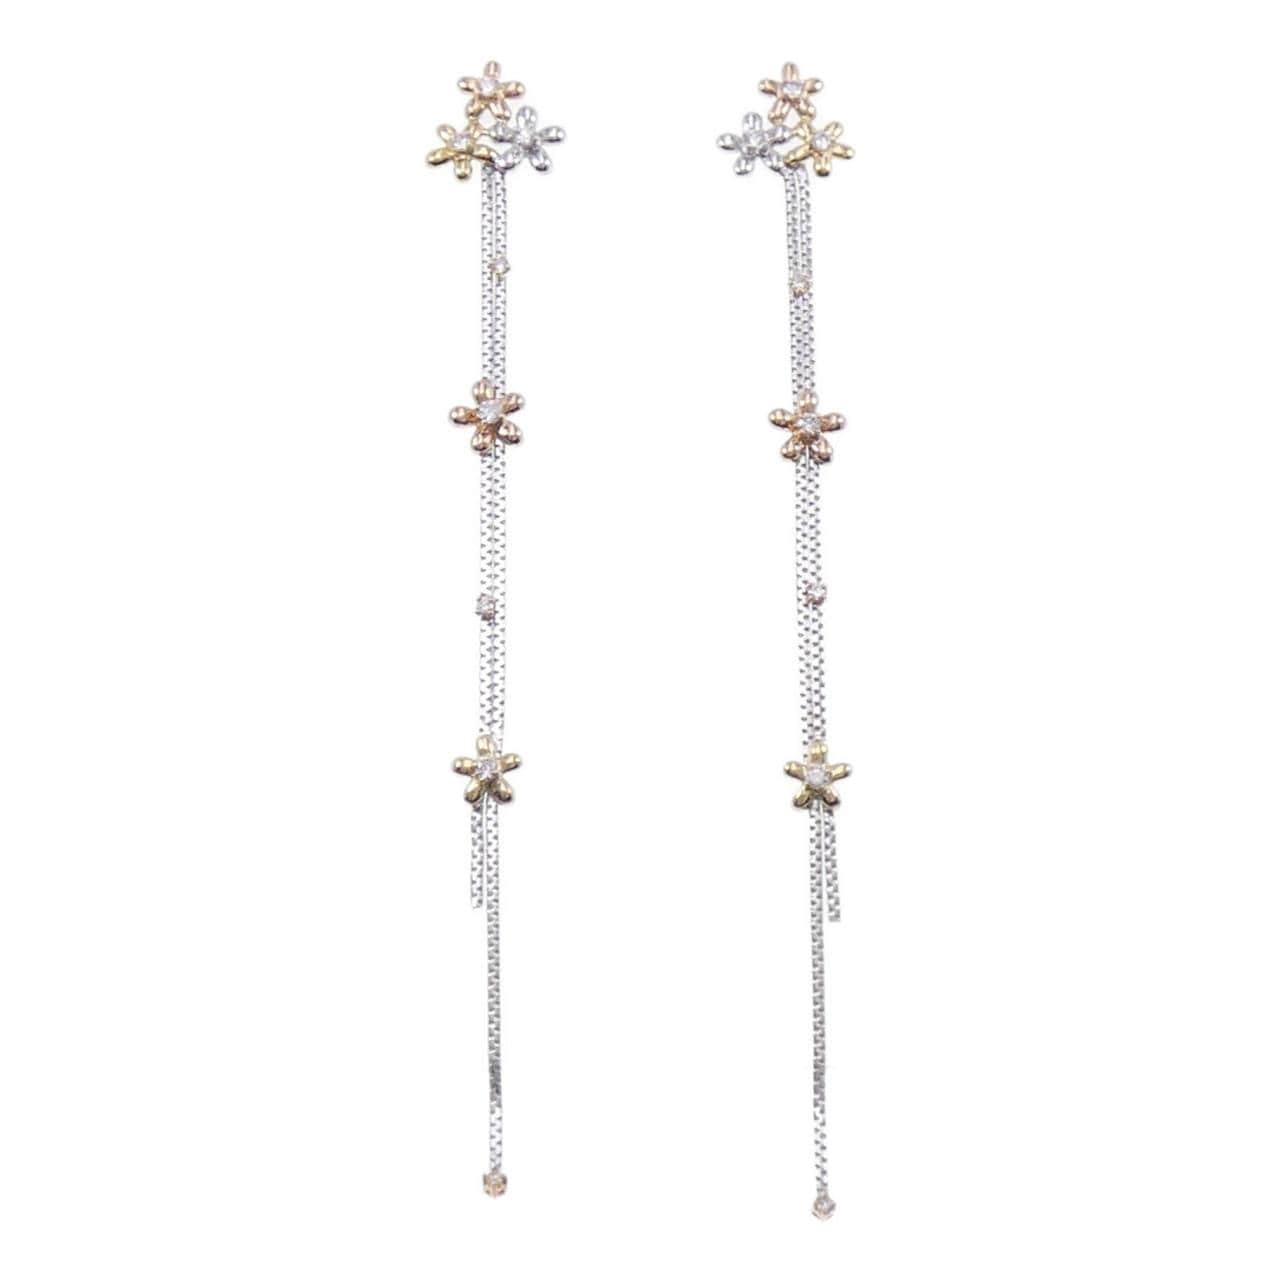 750 Three Colors/K18WG Flower Diamond Earrings 0.60CT